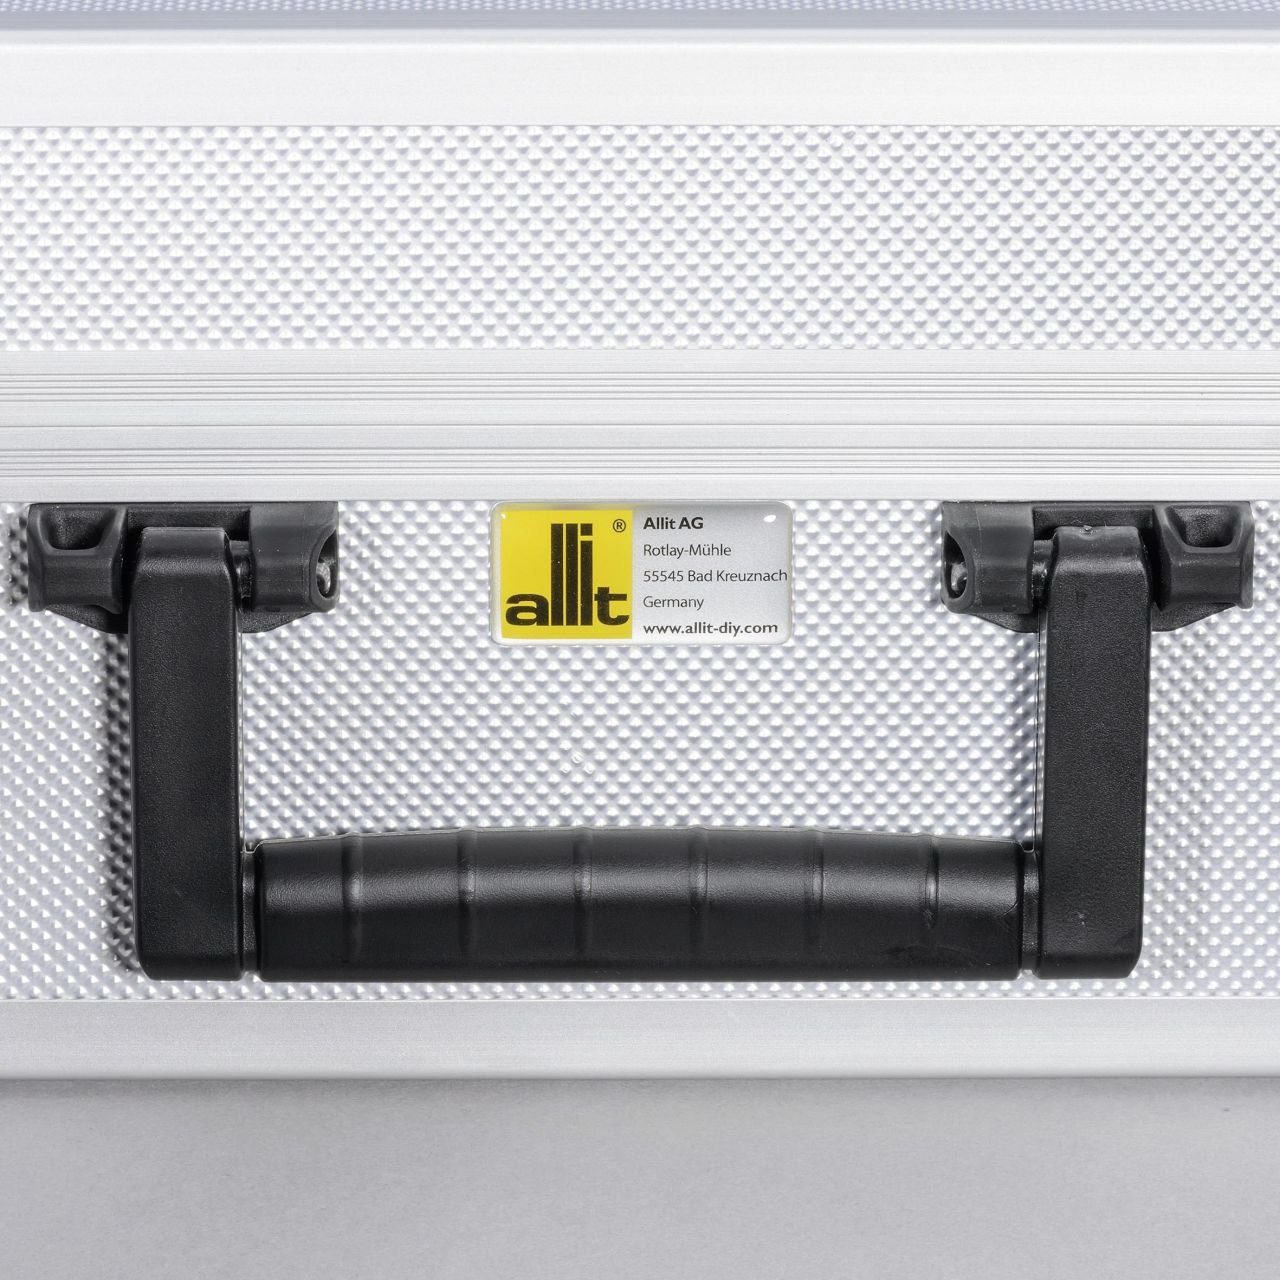 Basic AluPlus Allit Allit Verpackungskoffer Utensilien- Werkzeugkoffer